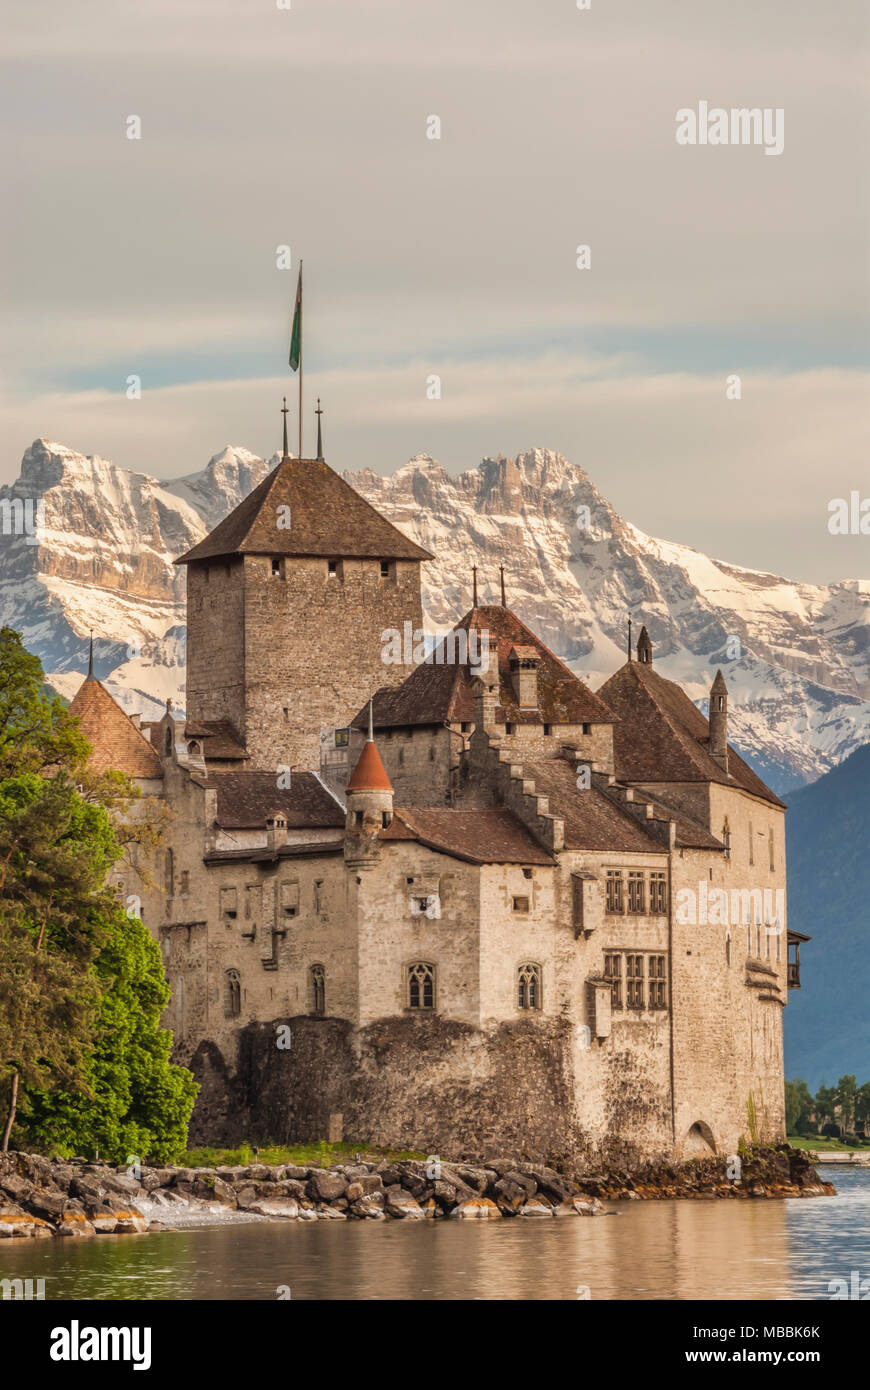 Chillon Castle (Château de Chillon) located on the shore of Lake Geneva in Montreux; Switzerland Stock Photo